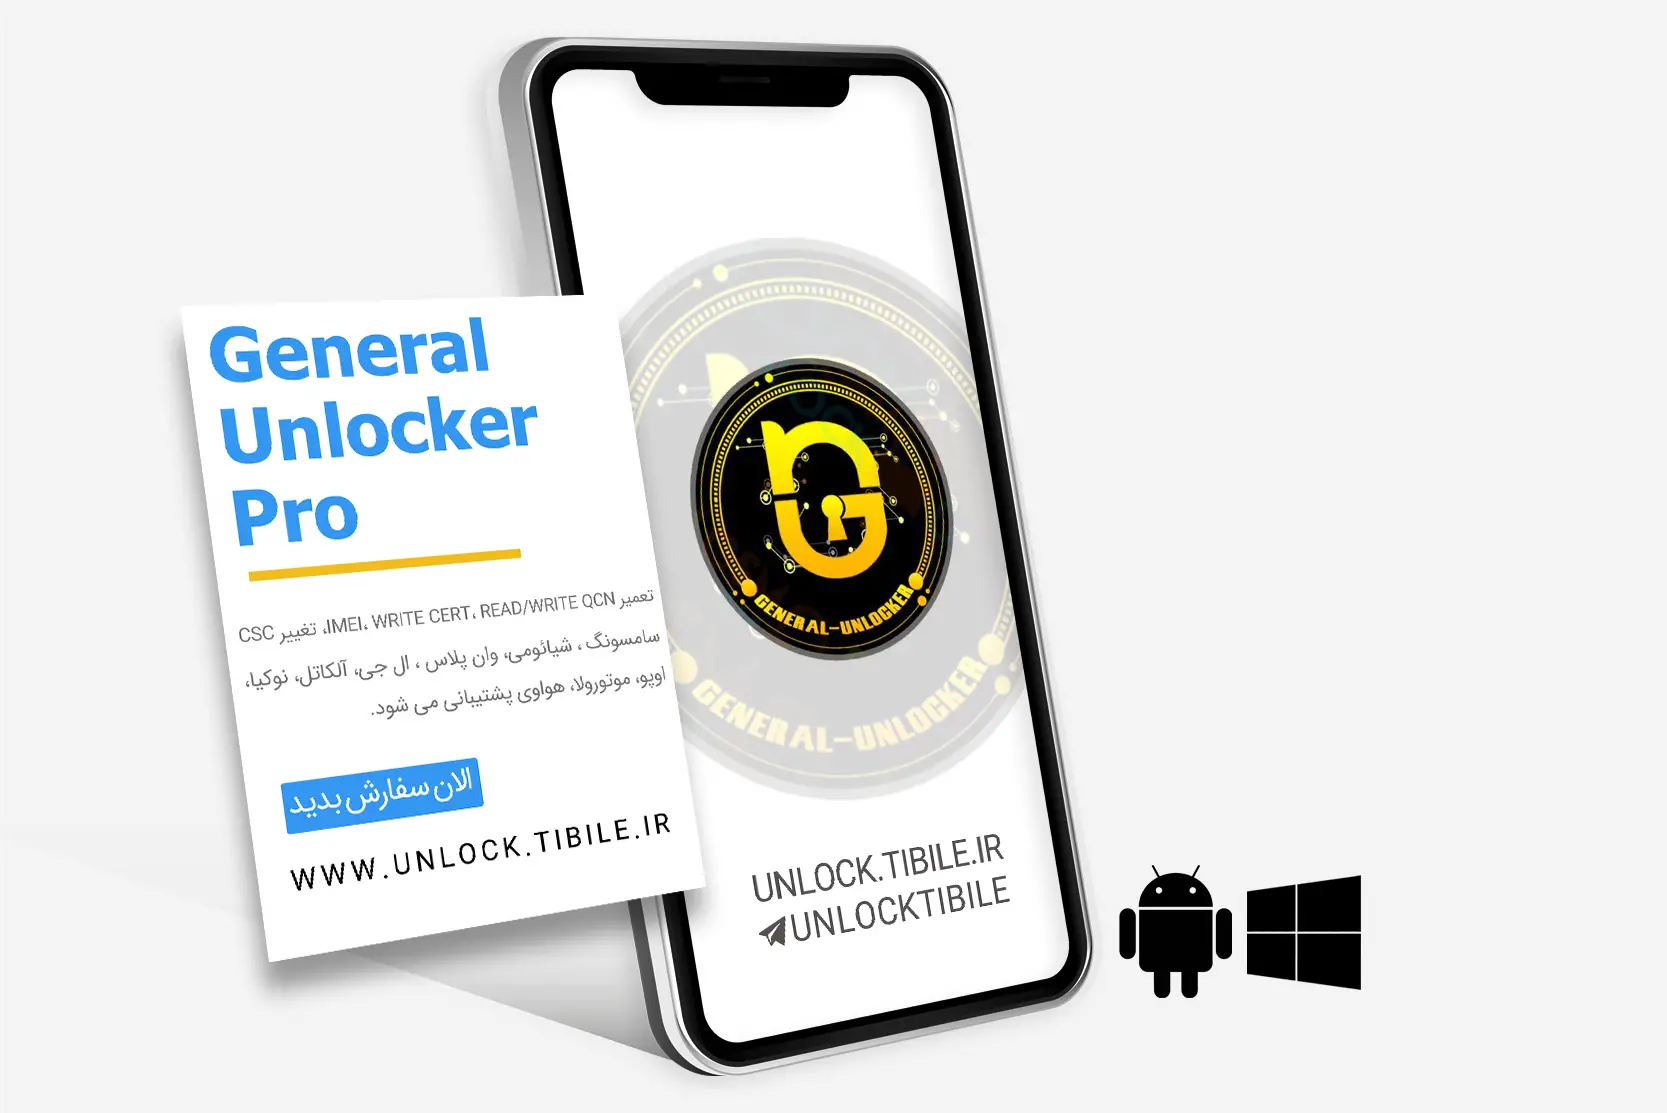 General Unlocker Pro